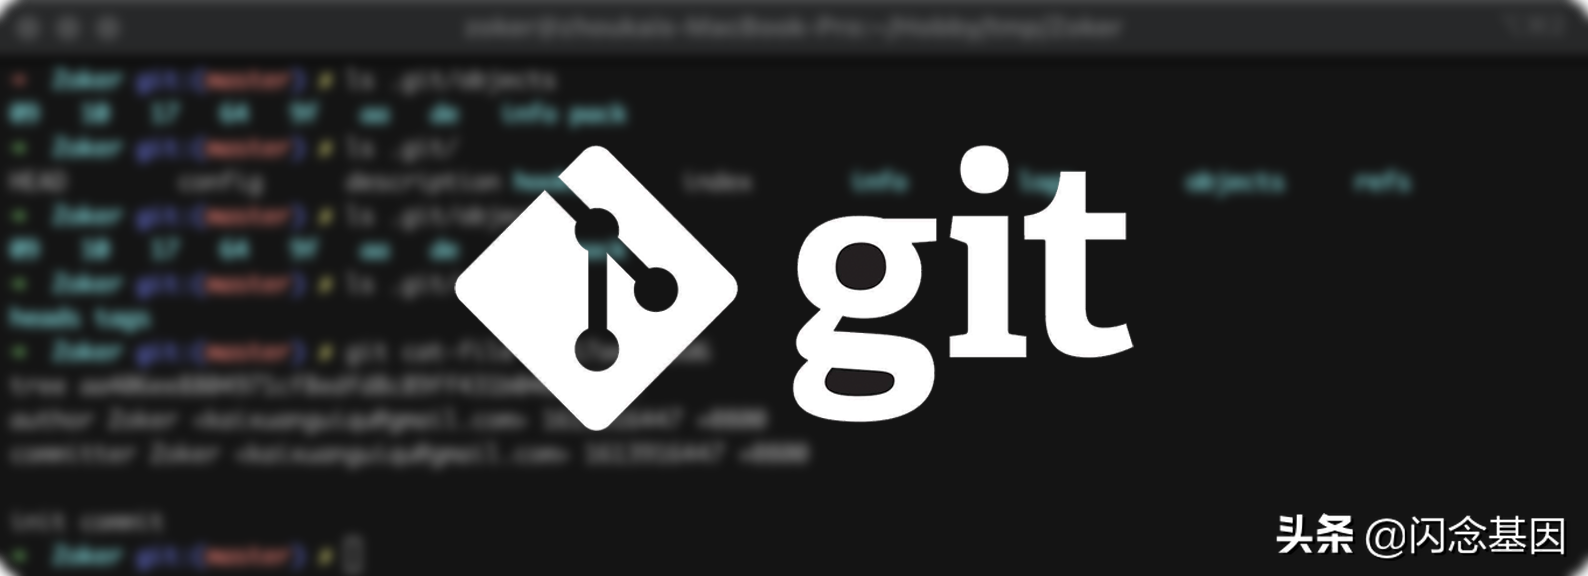 Hablar sobre el principio de almacenamiento de Git y la implementación relacionada